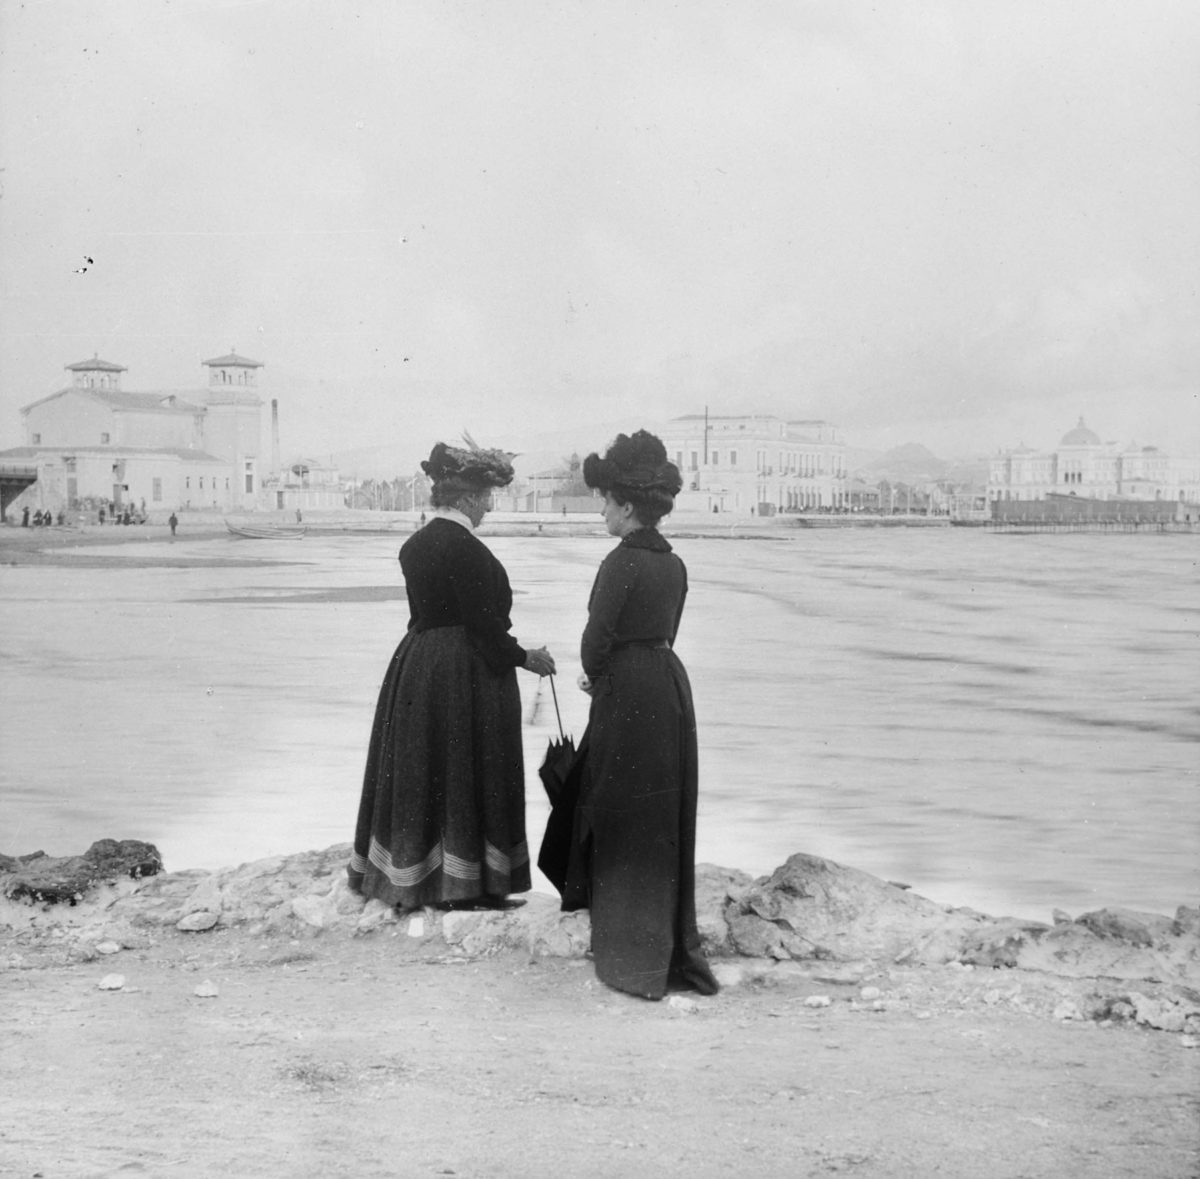 Νέο Φάληρο. Στο βάθος, από αριστερά στα δεξιά, το νέο θέατρο που κτίστηκε το 1896, το ξενοδοχείο του σταθμού με την προσθήκη του τρίτου ορόφου, το νεόδμητο ξενοδοχείο «Ακταίον» και η εξέδρα με τις καμπίνες των θαλάσσιων λουτρών. Φωτογραφία του A.L. Henderson.